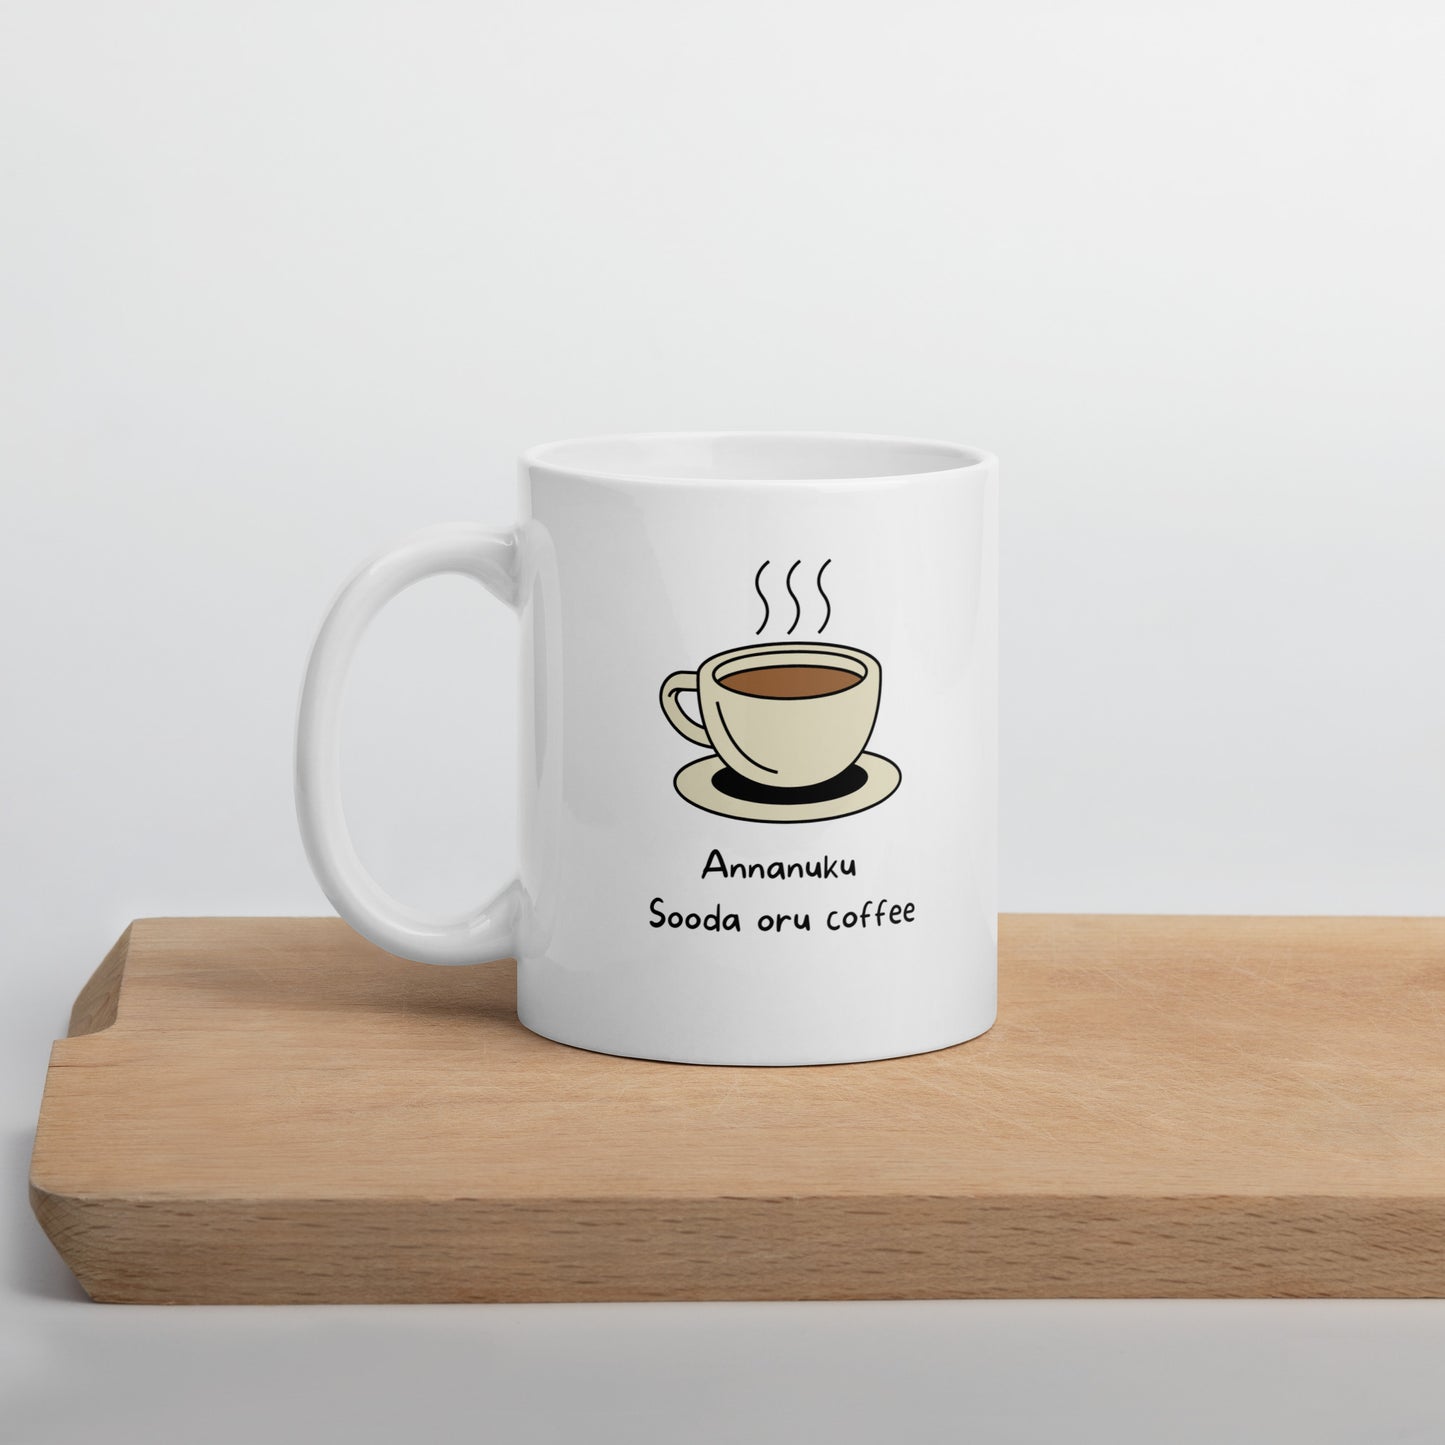 Annanuku sooda coffee White glossy mug